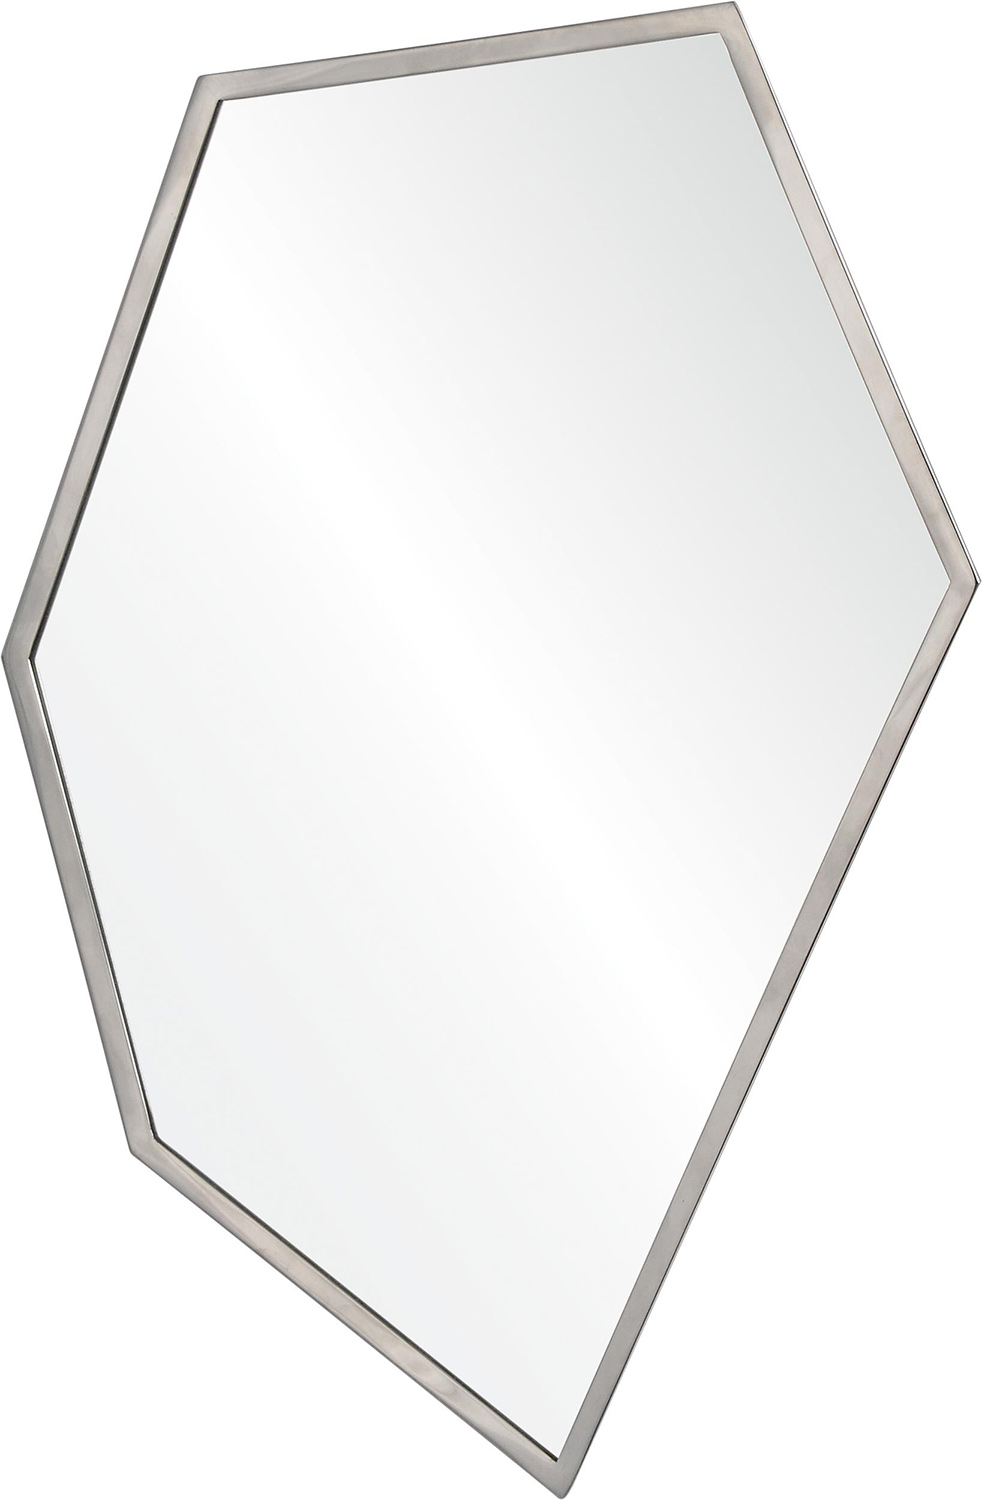 Ren-Wil Croquet Mirror - Stainless Steel